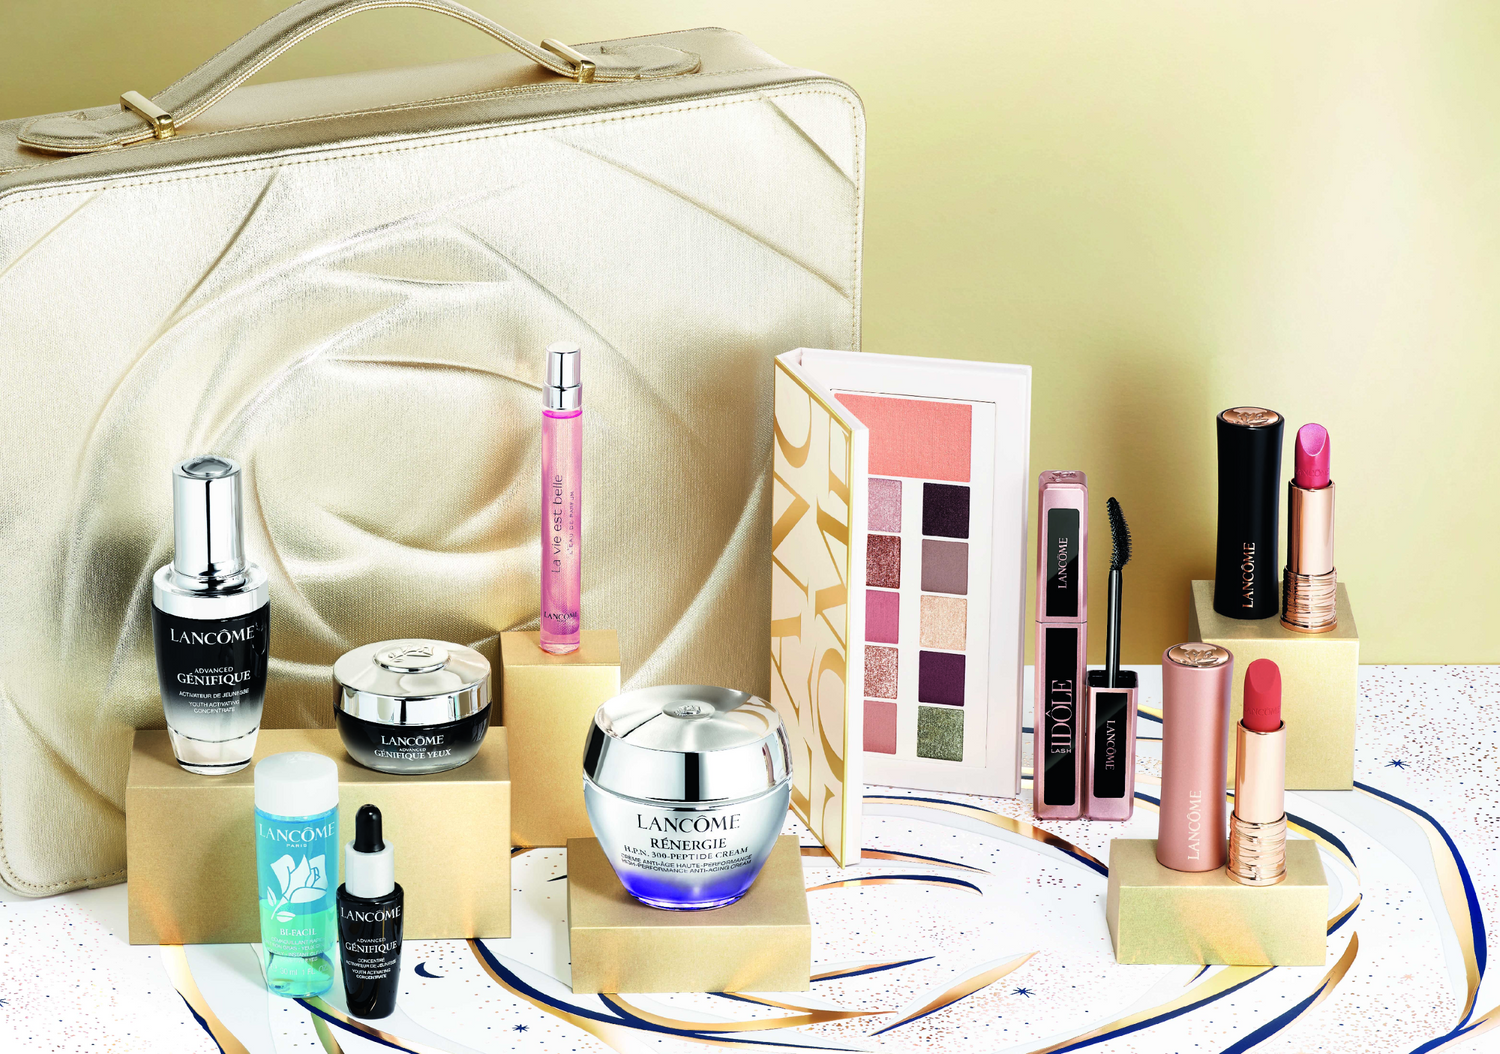 Lancôme Beauty Box Gift Set